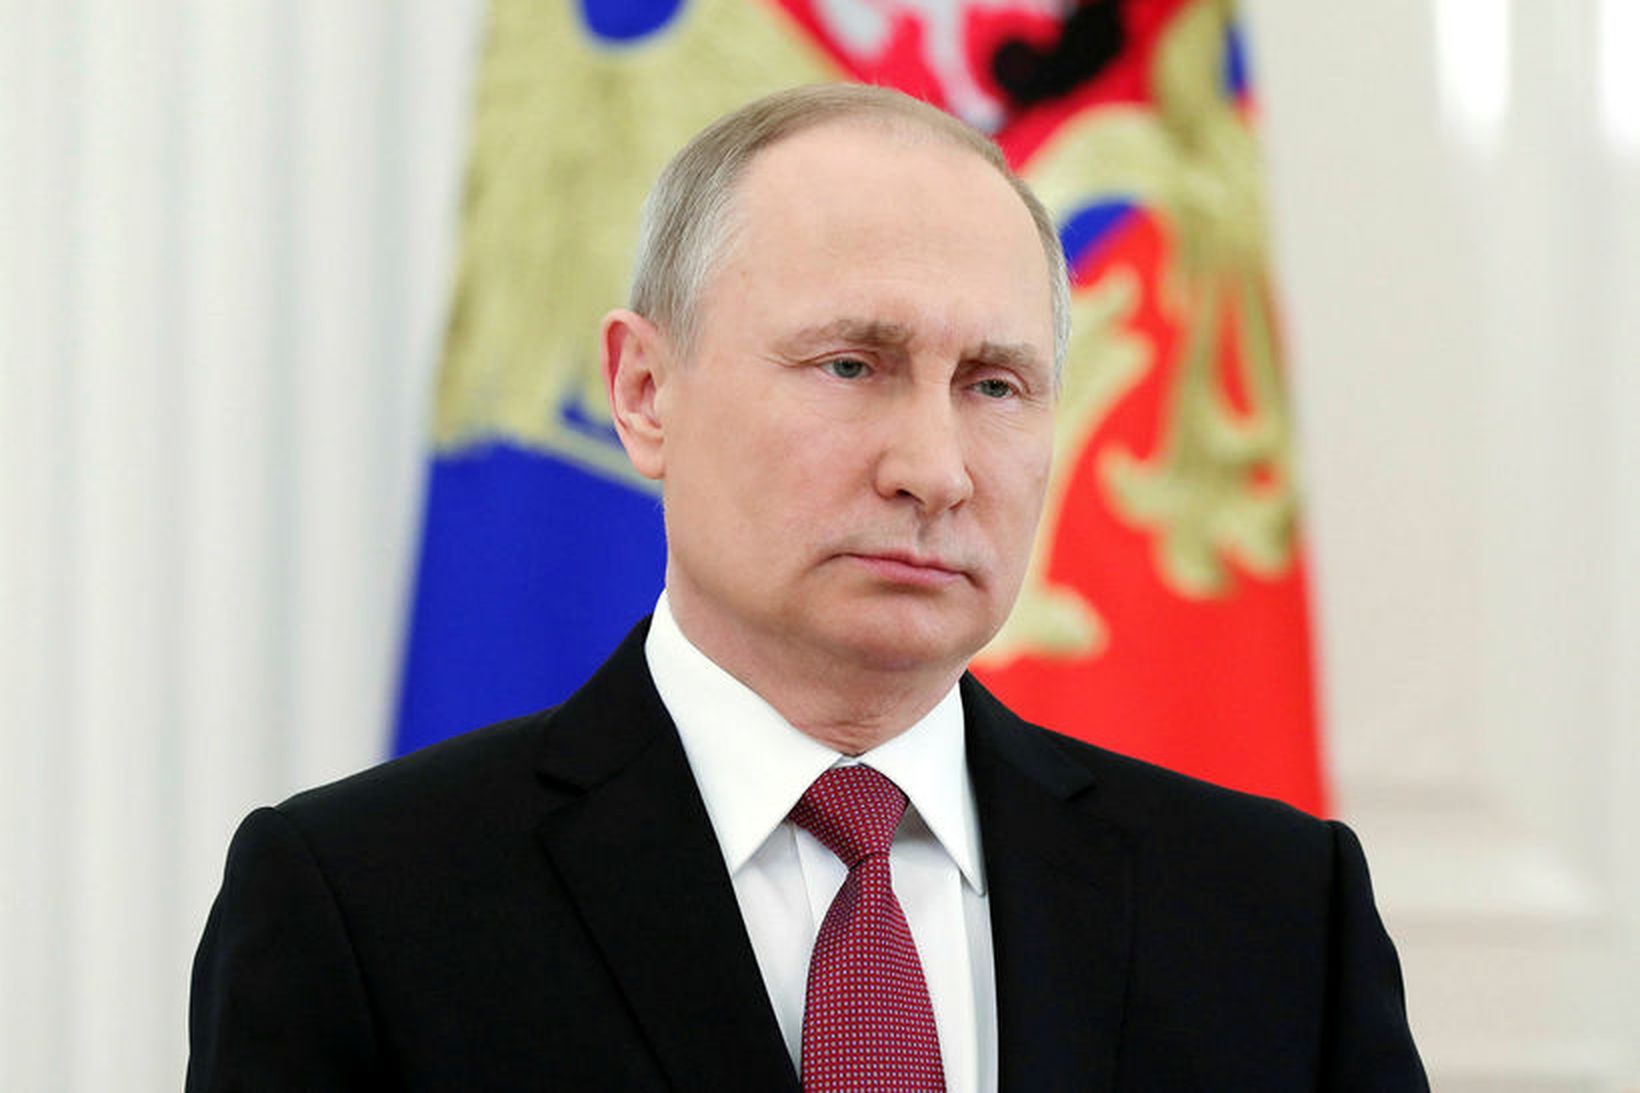 Vladimir Putin, forseti Rússlands, vildi lána Íslendingum, en horfið var …